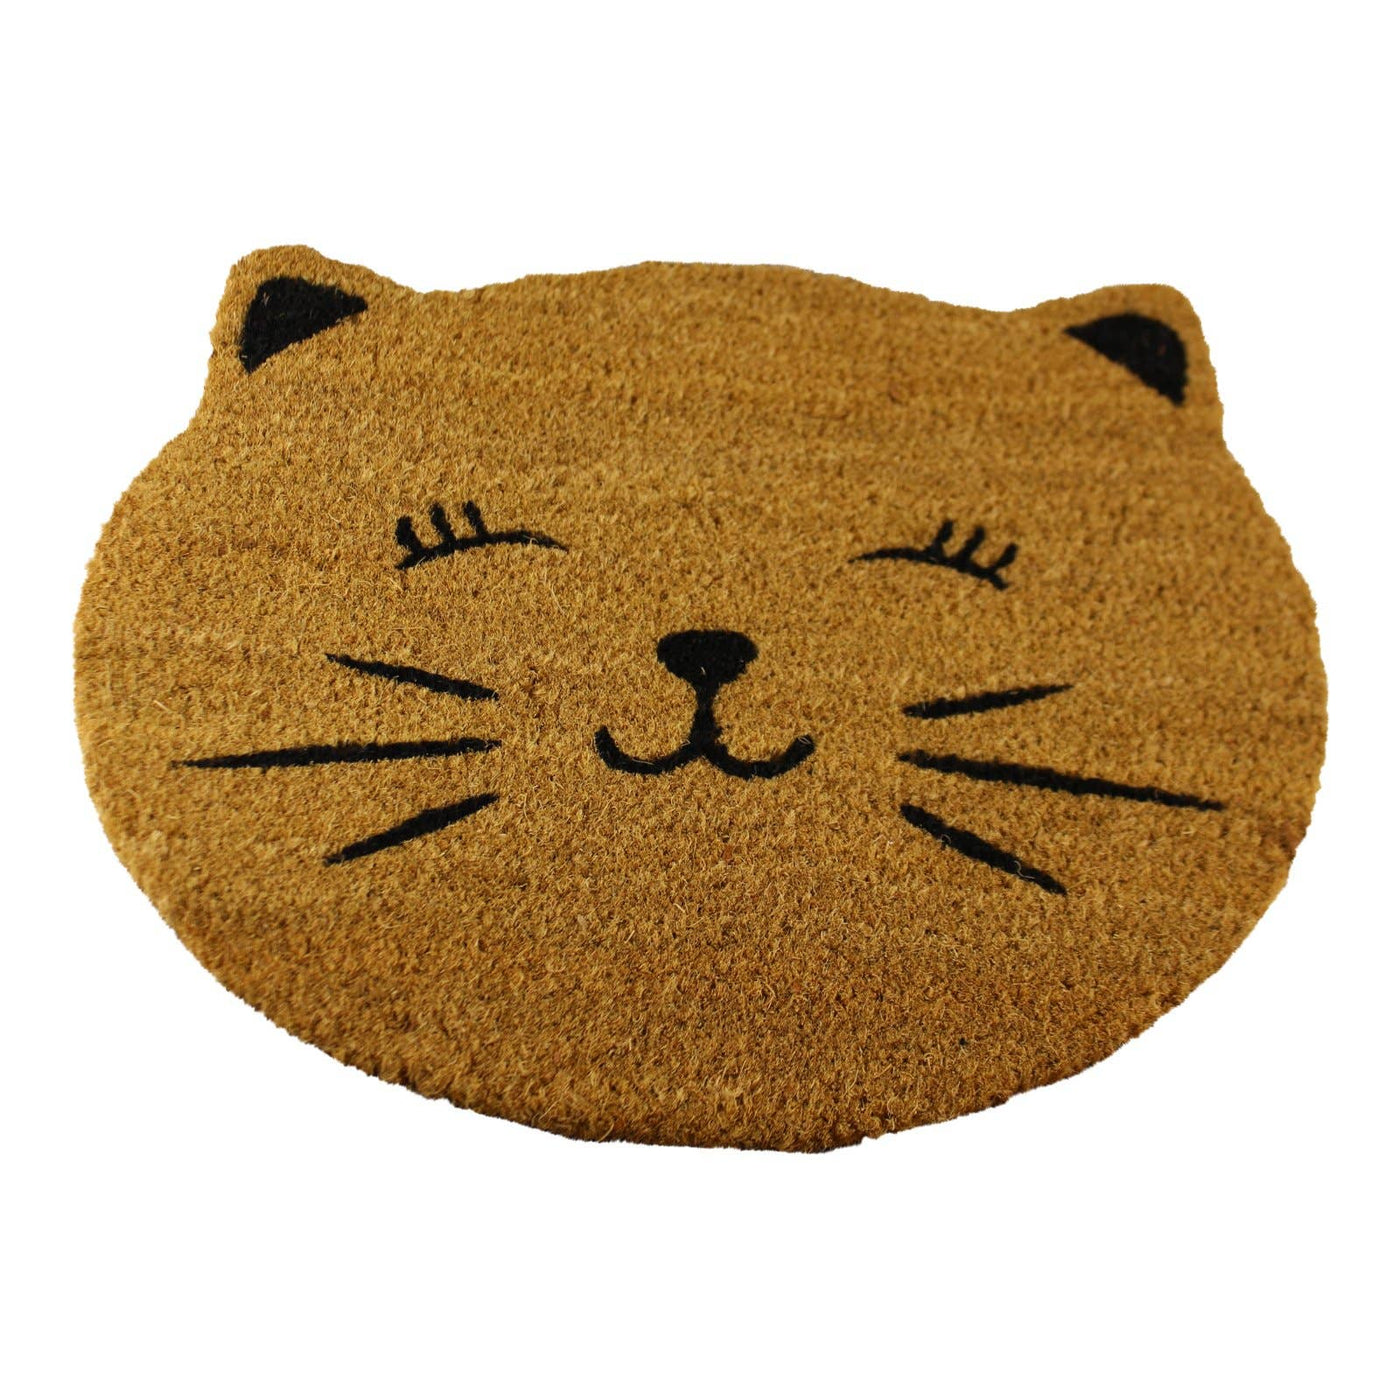 Geko Products Coir Doormat, Cat Design